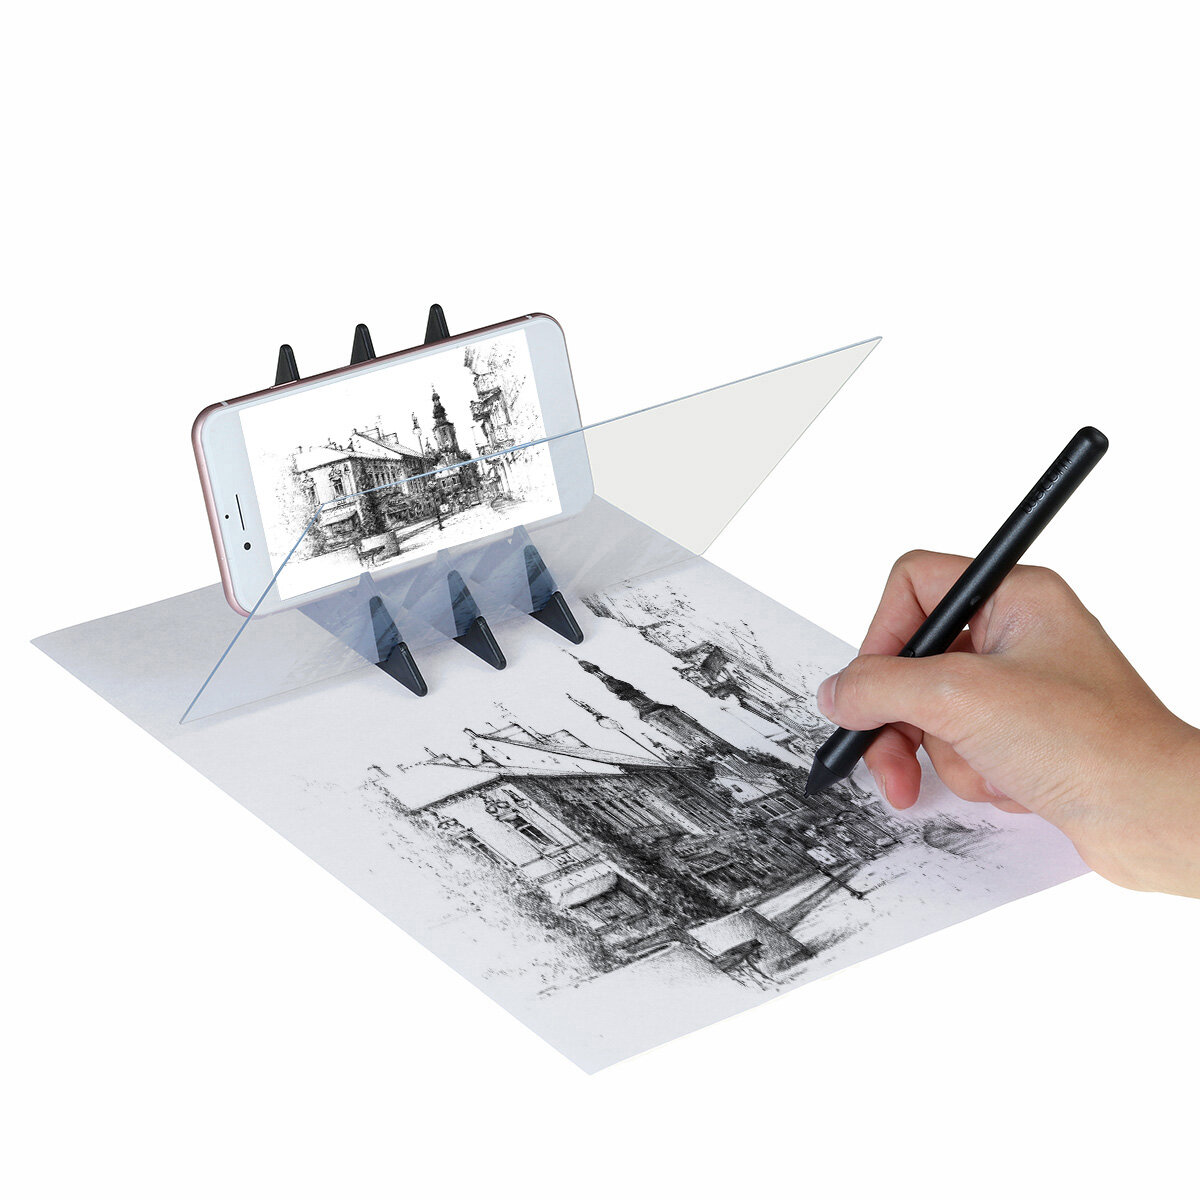 Tekening Schilderen Schets Optische spiegelreflectie Projectie Tracing Plate Board